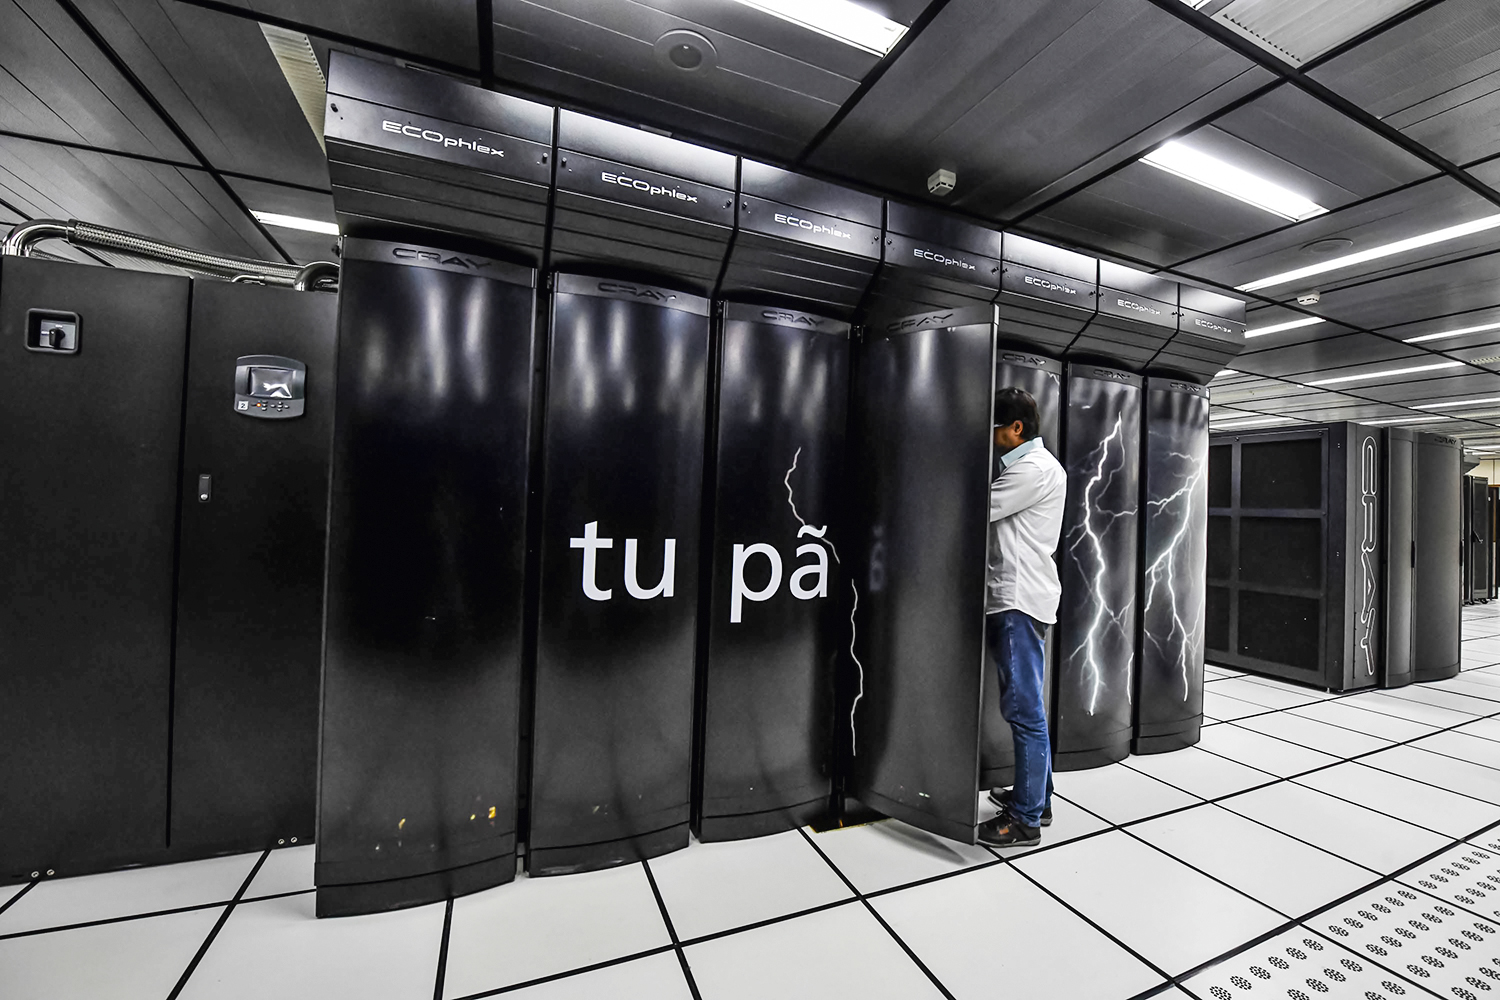 FORA DO AR - Supercomputador Tupã: o equipamento foi desligado para reduzir o gasto com energia elétrica -